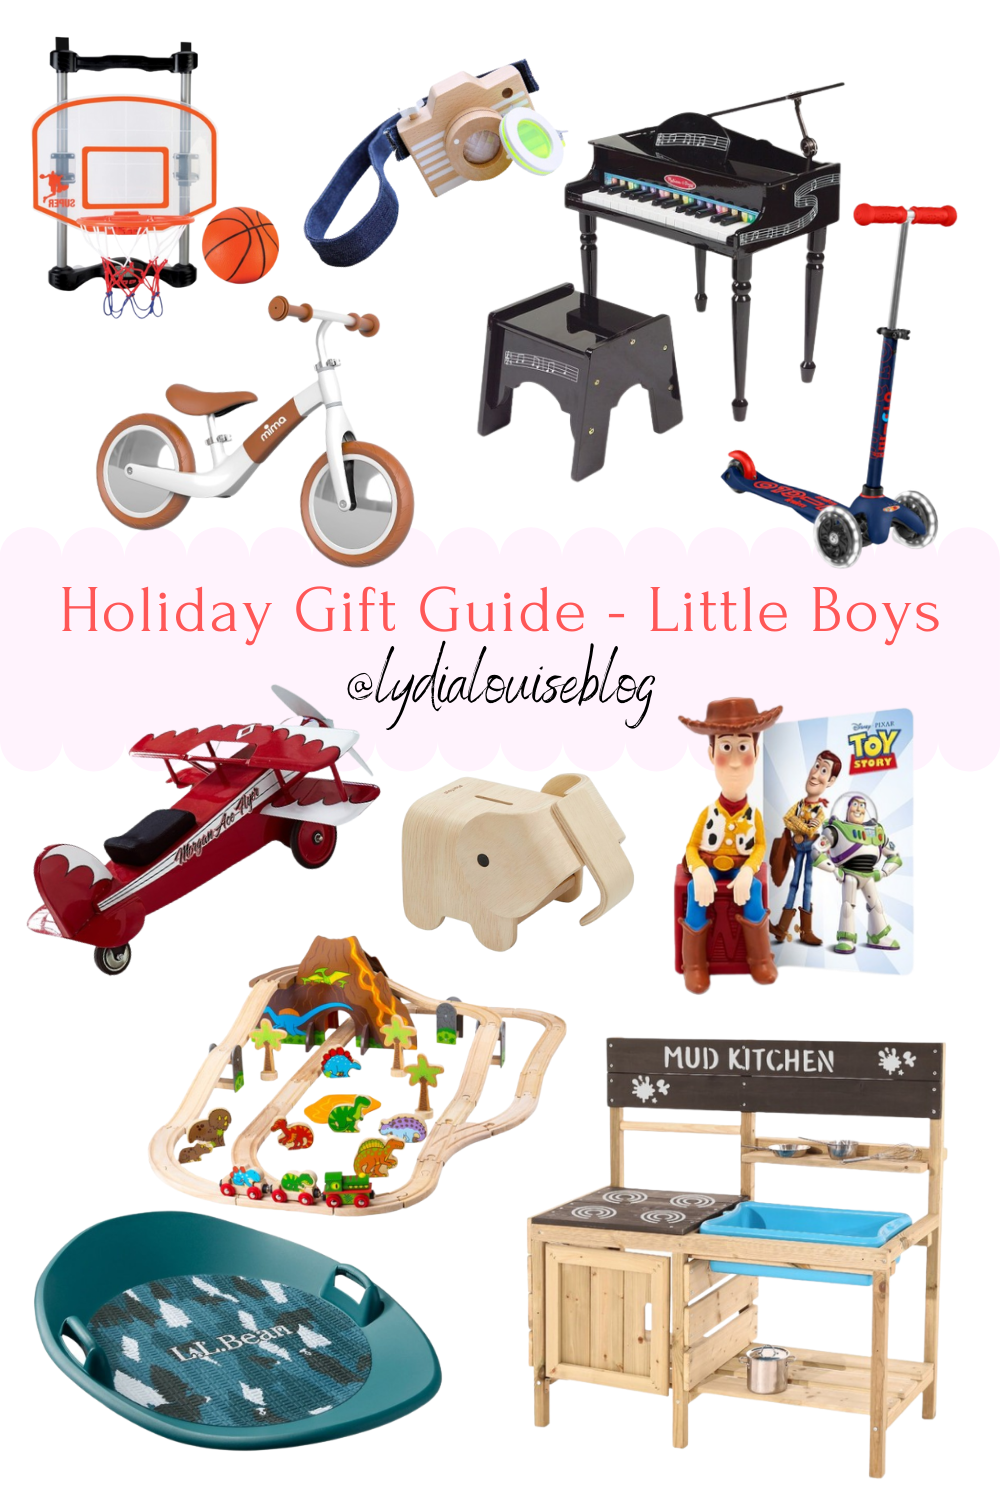 Little Boys Gift Guide